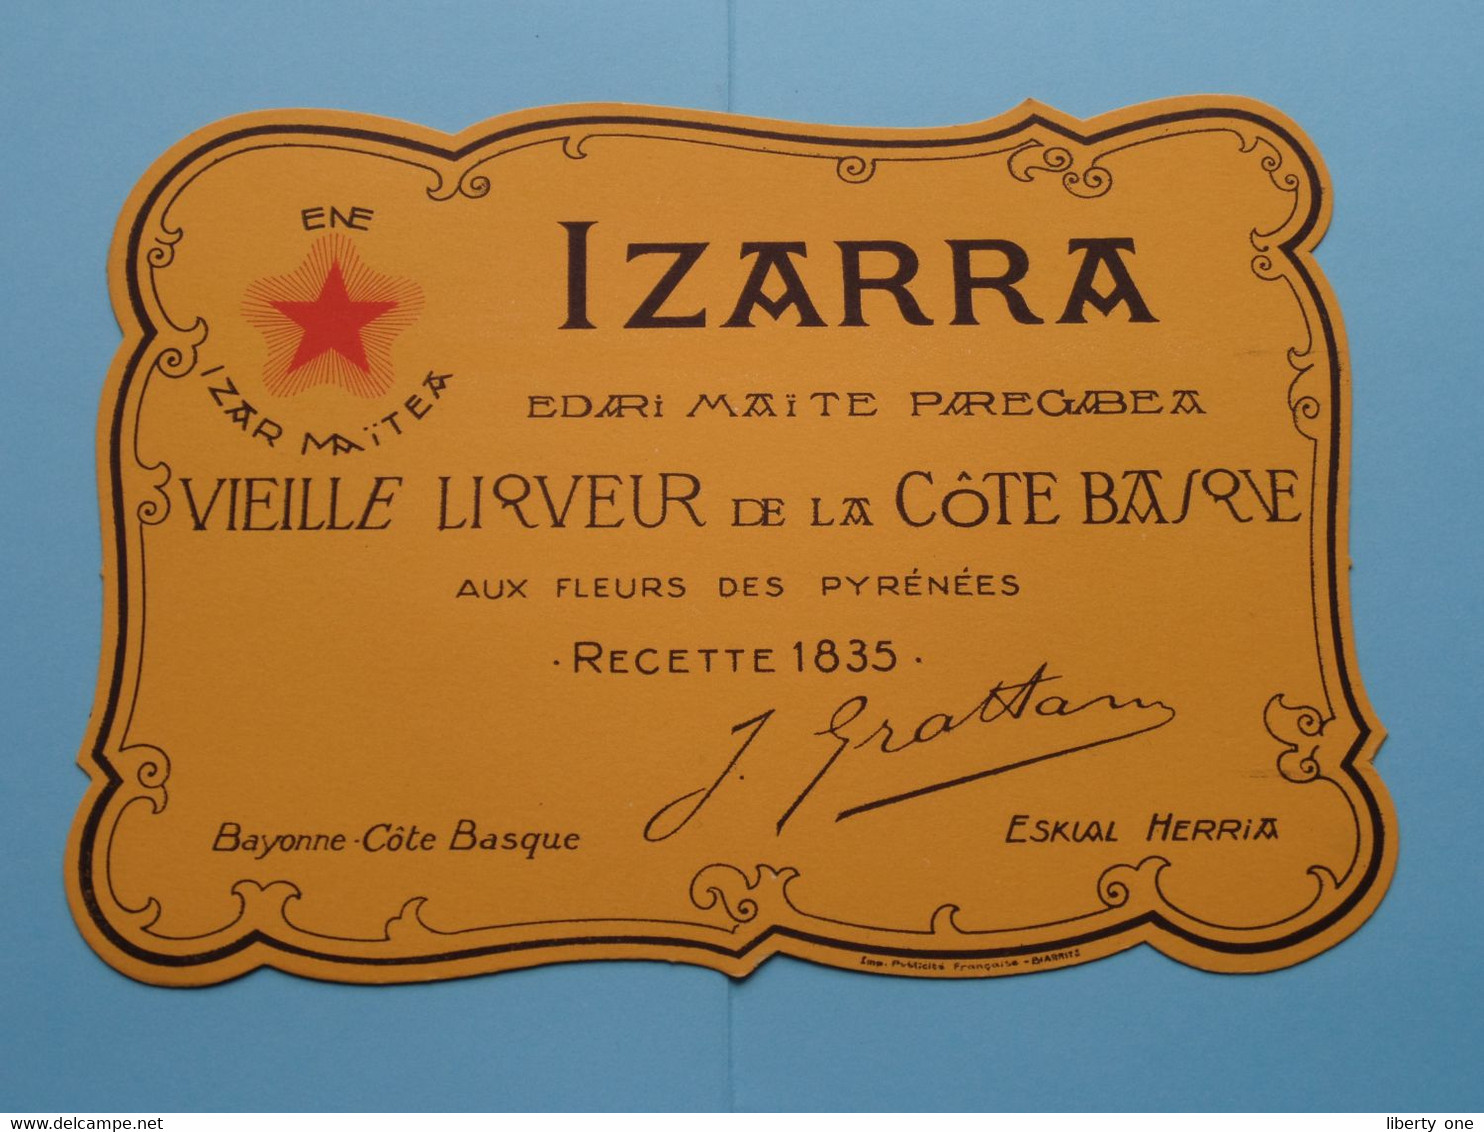 IZARRA Vieille Liqueur De La Côte Basque BUVARD Format +/- 21 X 15 Cm. ( Zie / Voir SCAN ) ! - Schnaps & Bier